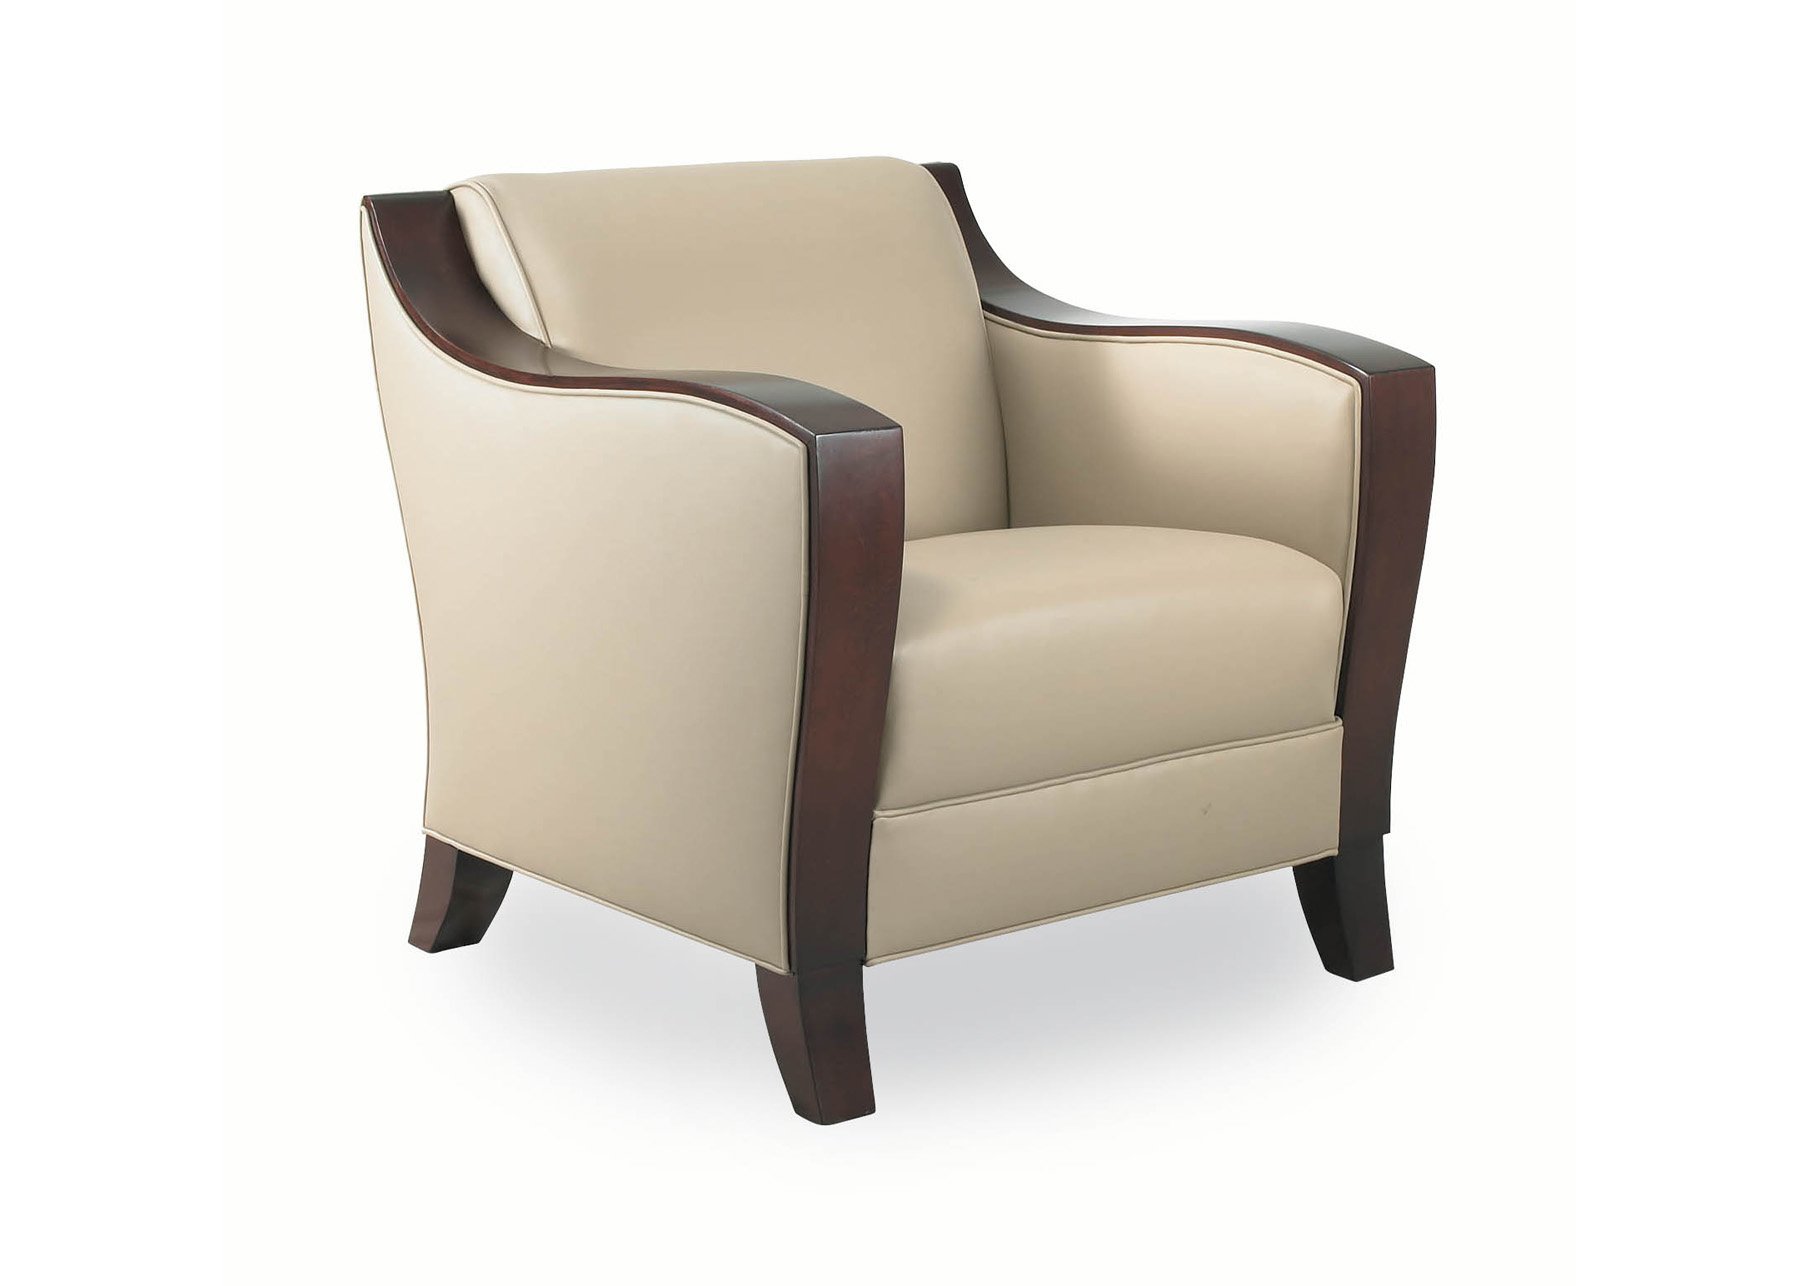 Cabot Wrenn Fusion Lounge Chair